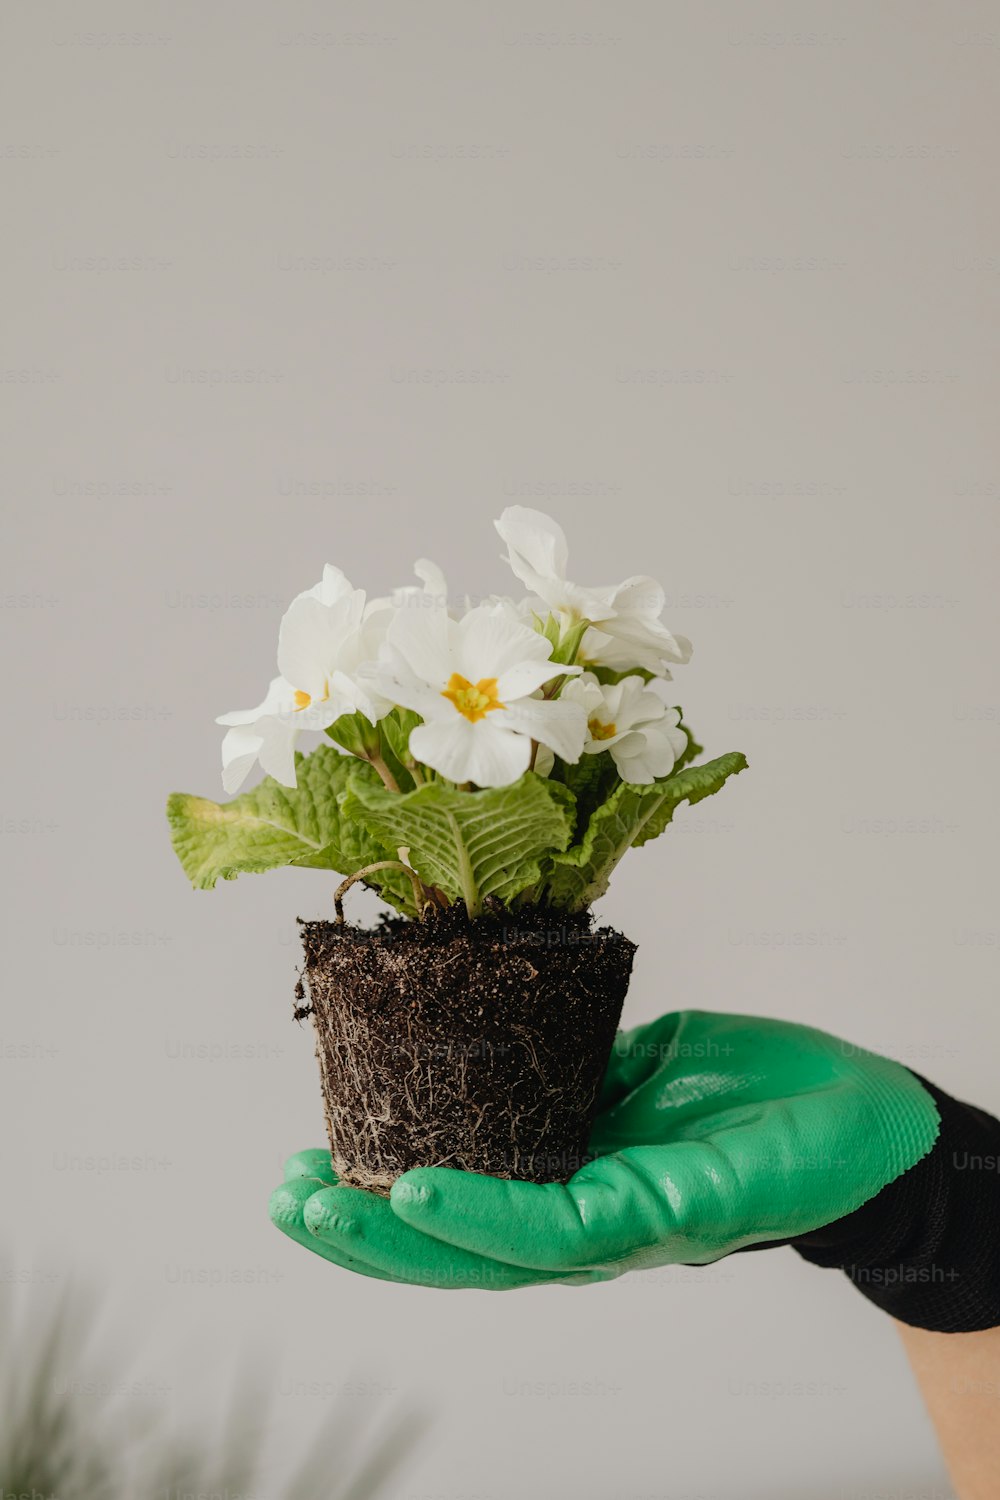 una persona che tiene una pianta in vaso con fiori bianchi